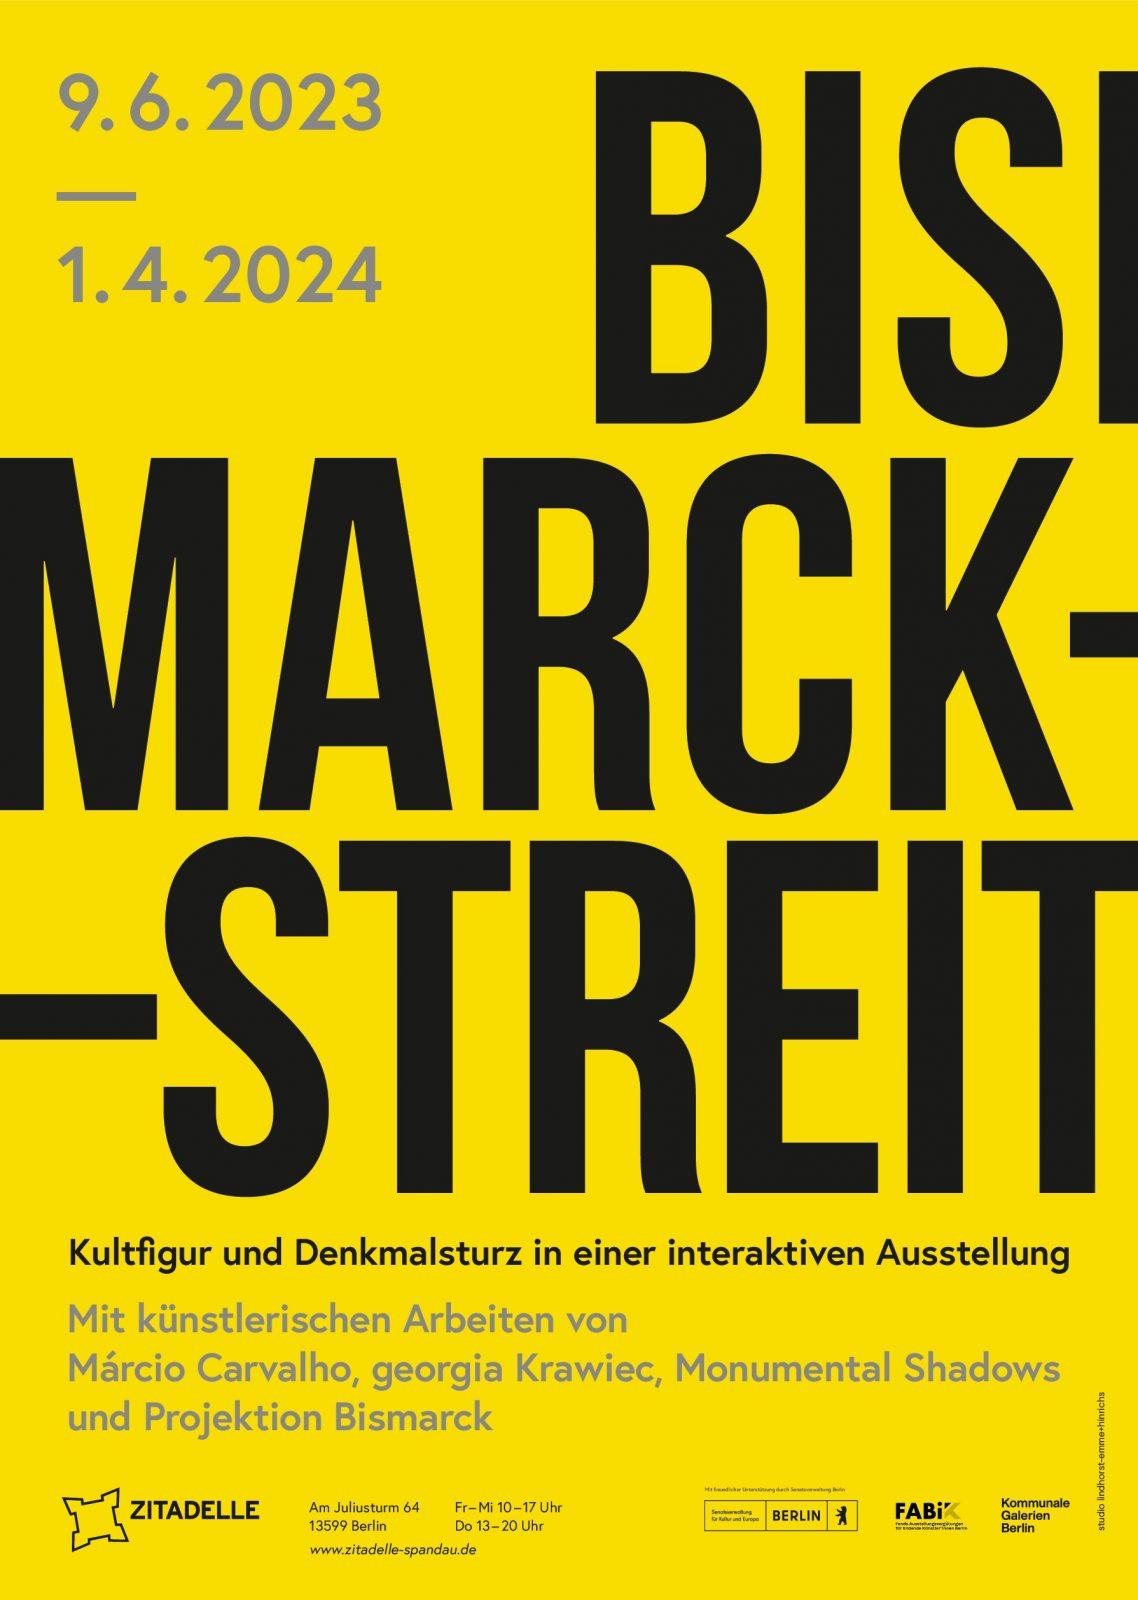 Plakat zur Ausstellung mit schwarzem Schriftzug "Bismarck-Streit" auf gelben Hintergrund